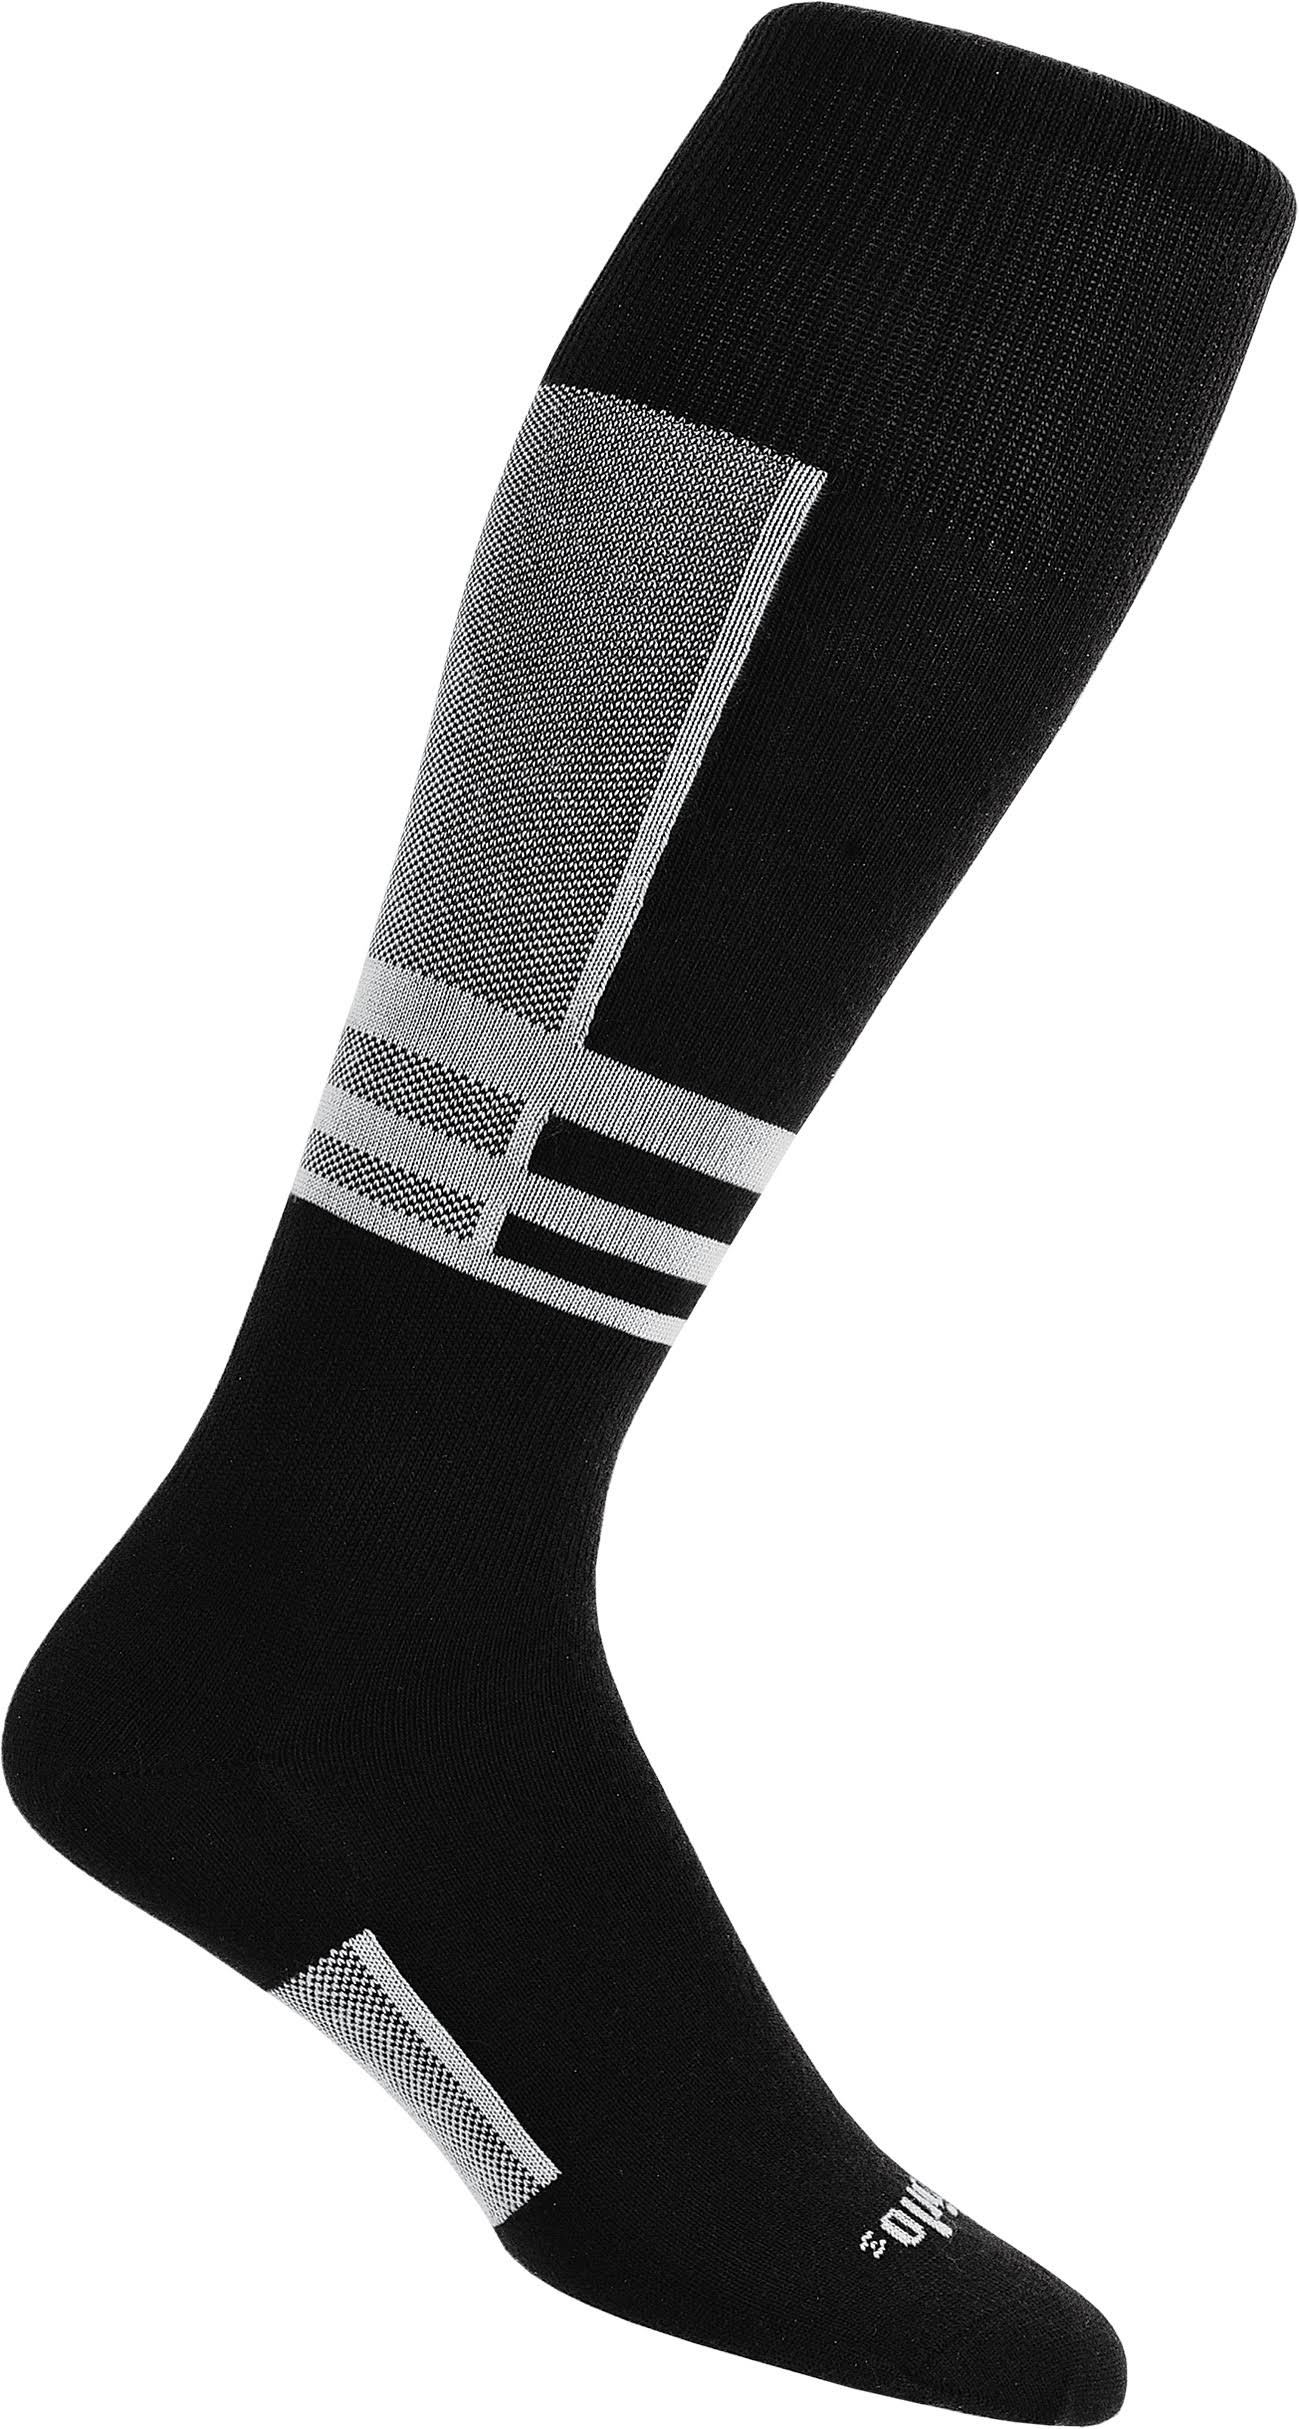 Thorlo Ultra Light Ski Liner Sock - White/Black - 11.5-13